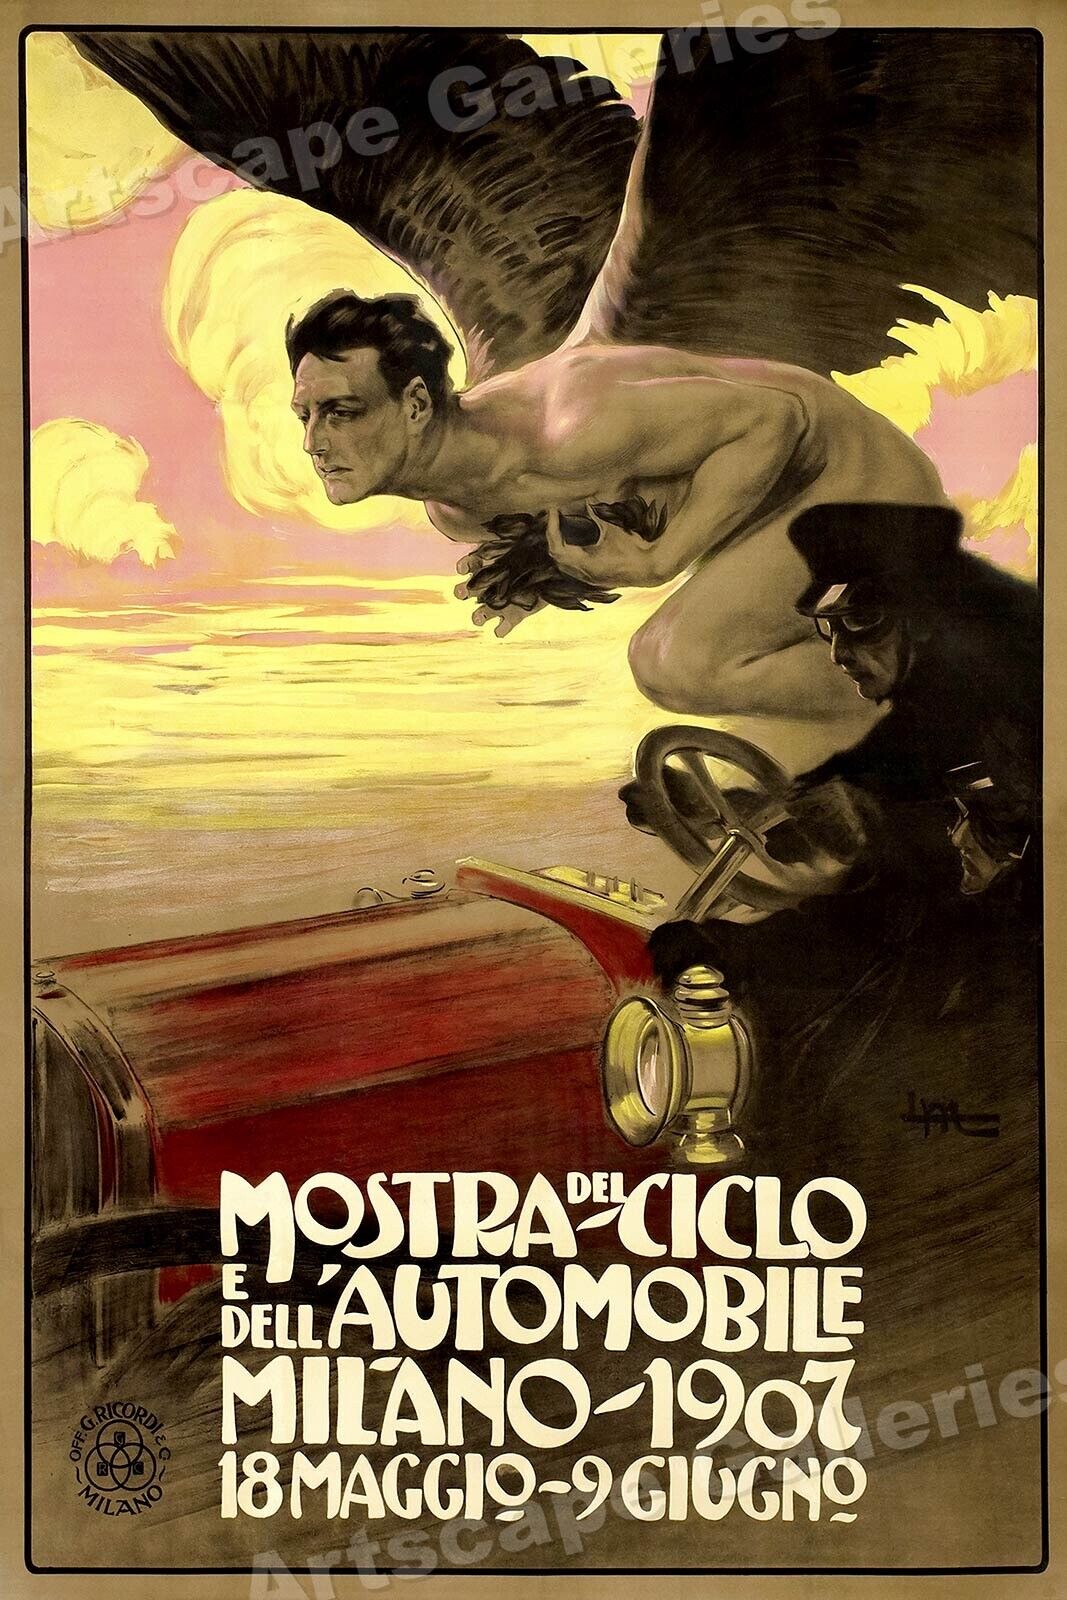 Mostra del Ciclo 1907 Milano Italy Vintage Style Car Poster - 24x36